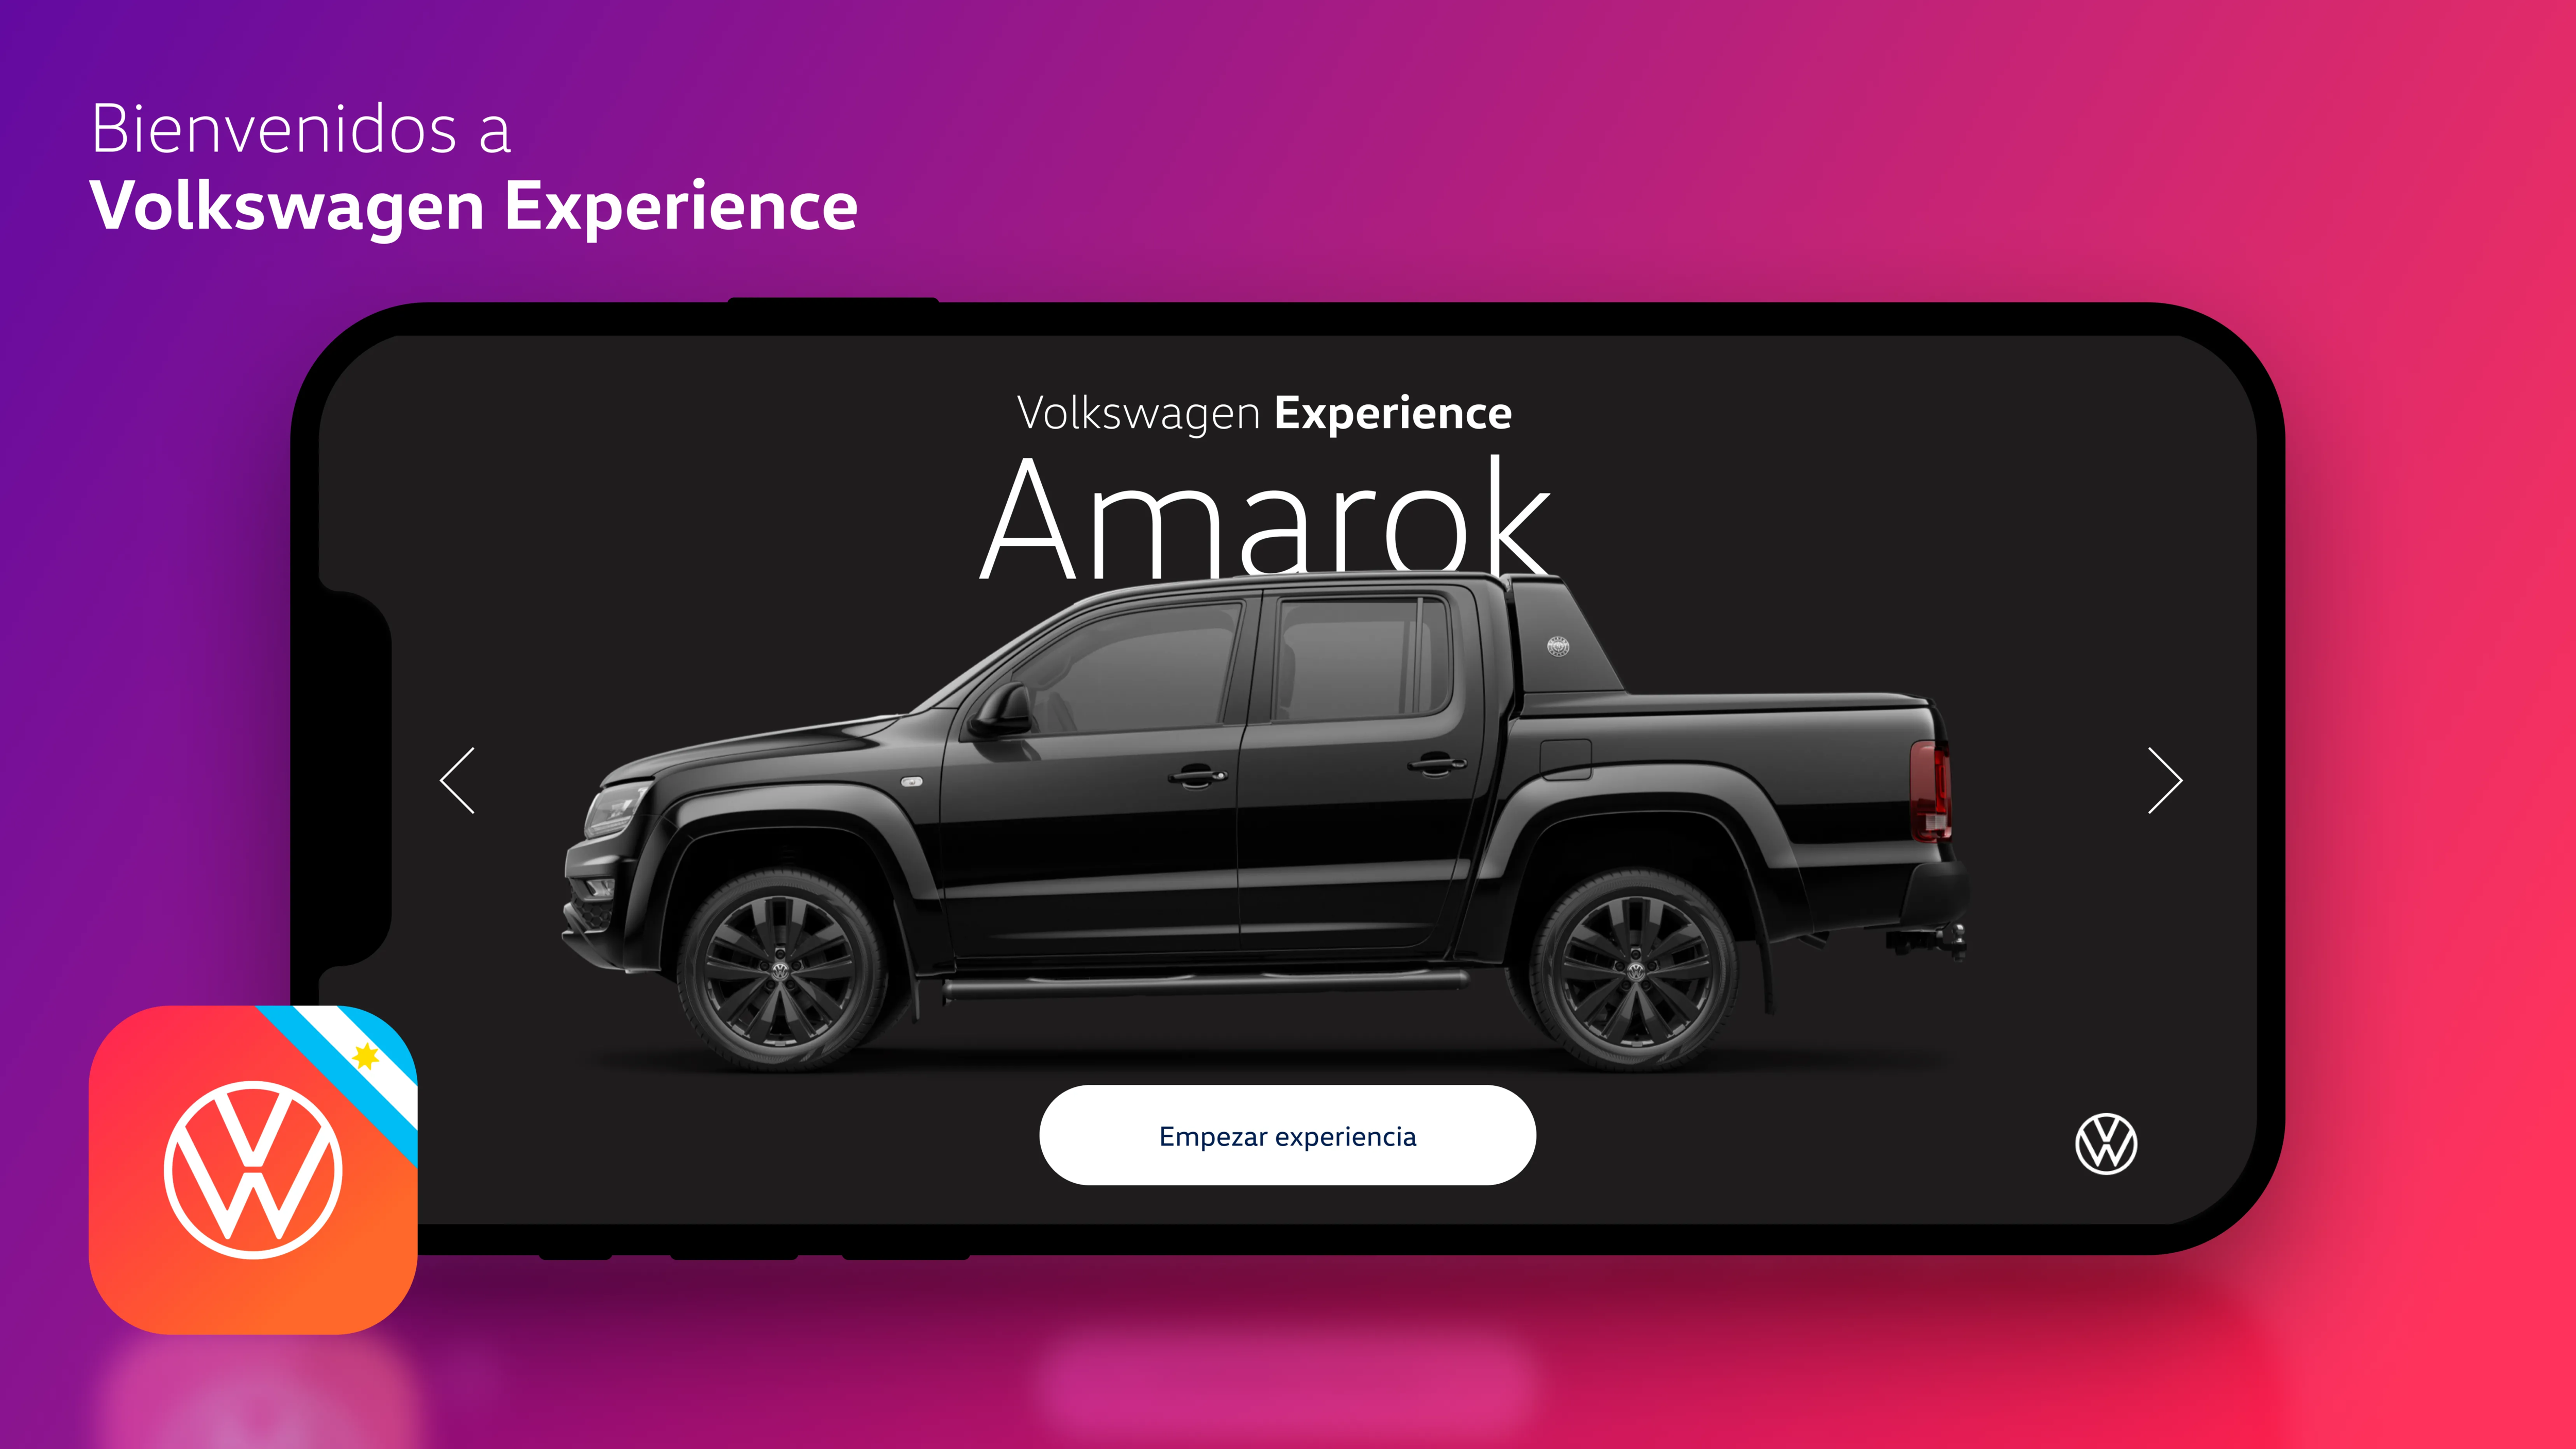 Amarok se suma a Volkswagen Experience, la exitosa aplicación de realidad aumentada de la marca